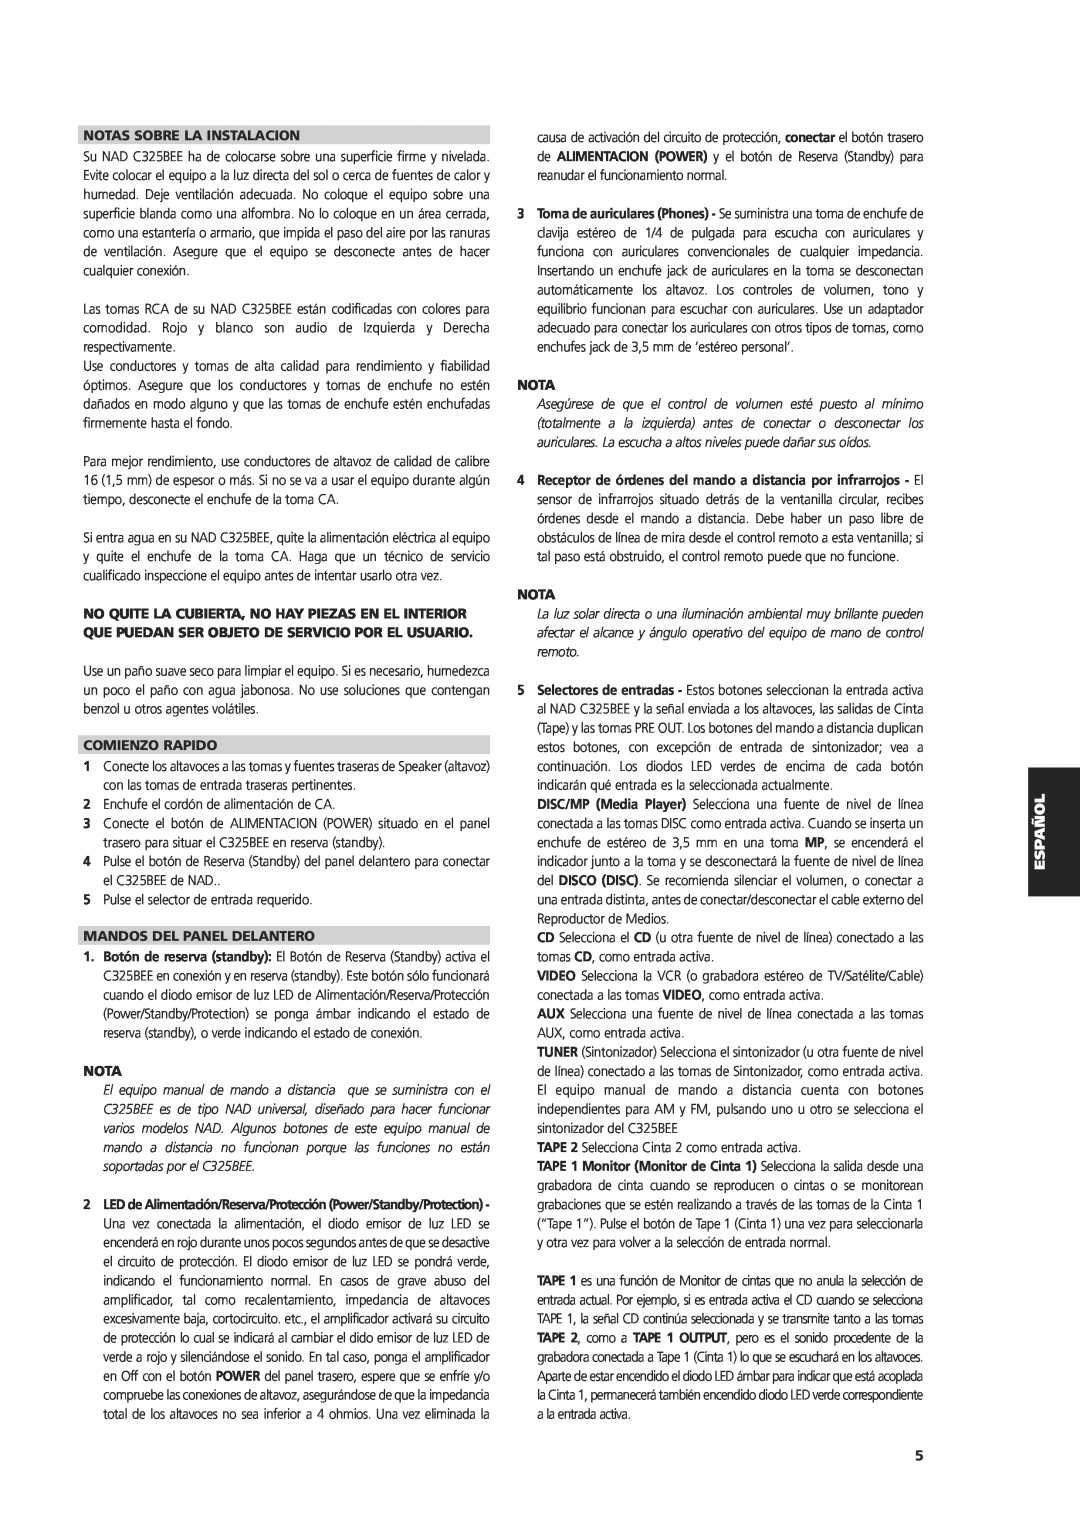 NAD C 325BEE owner manual Notas Sobre La Instalacion, Comienzo Rapido, Mandos Del Panel Delantero 